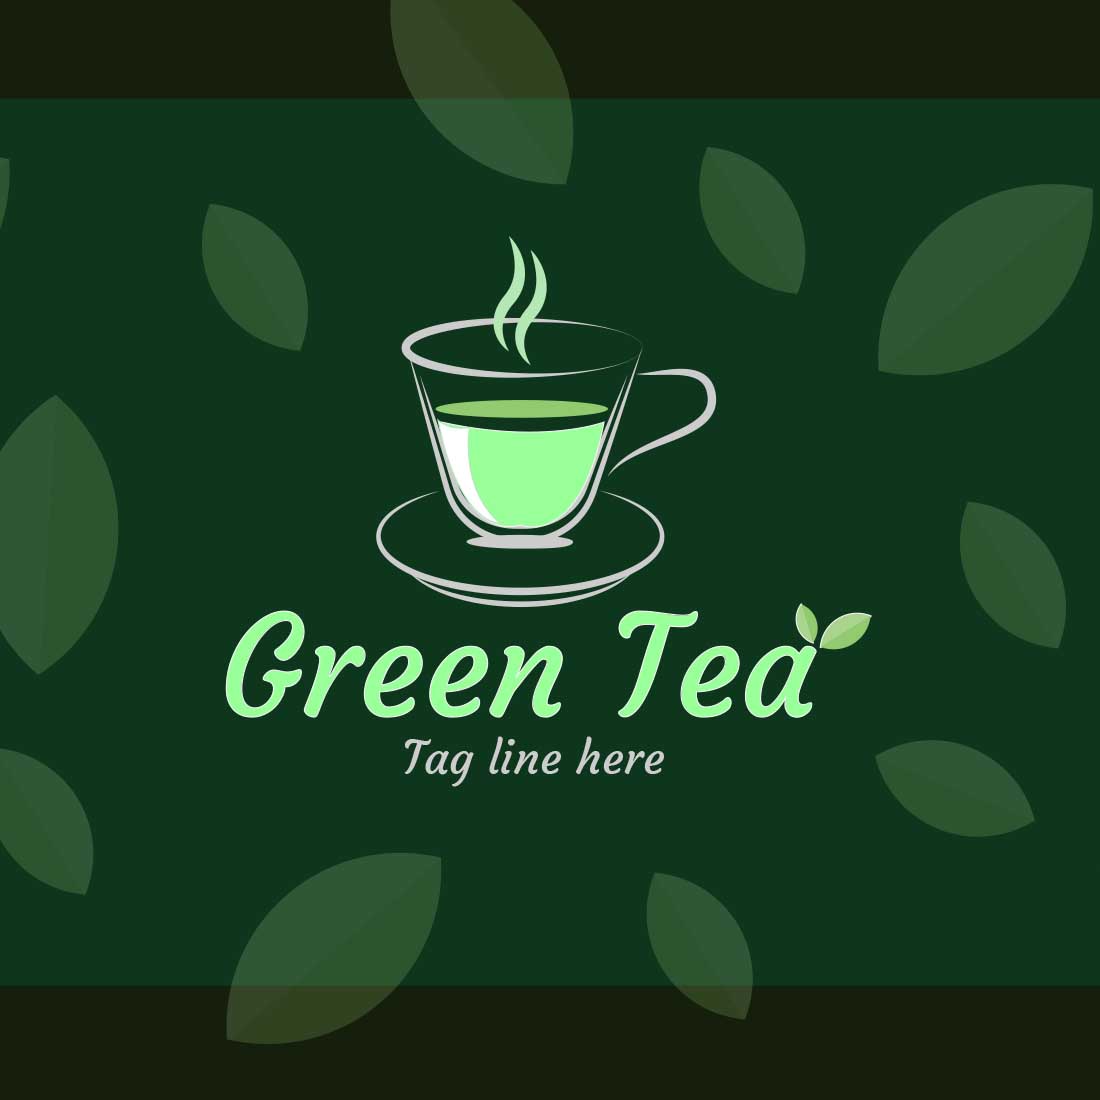 Green Tea Shop Logo Vector Only $4 preview image.